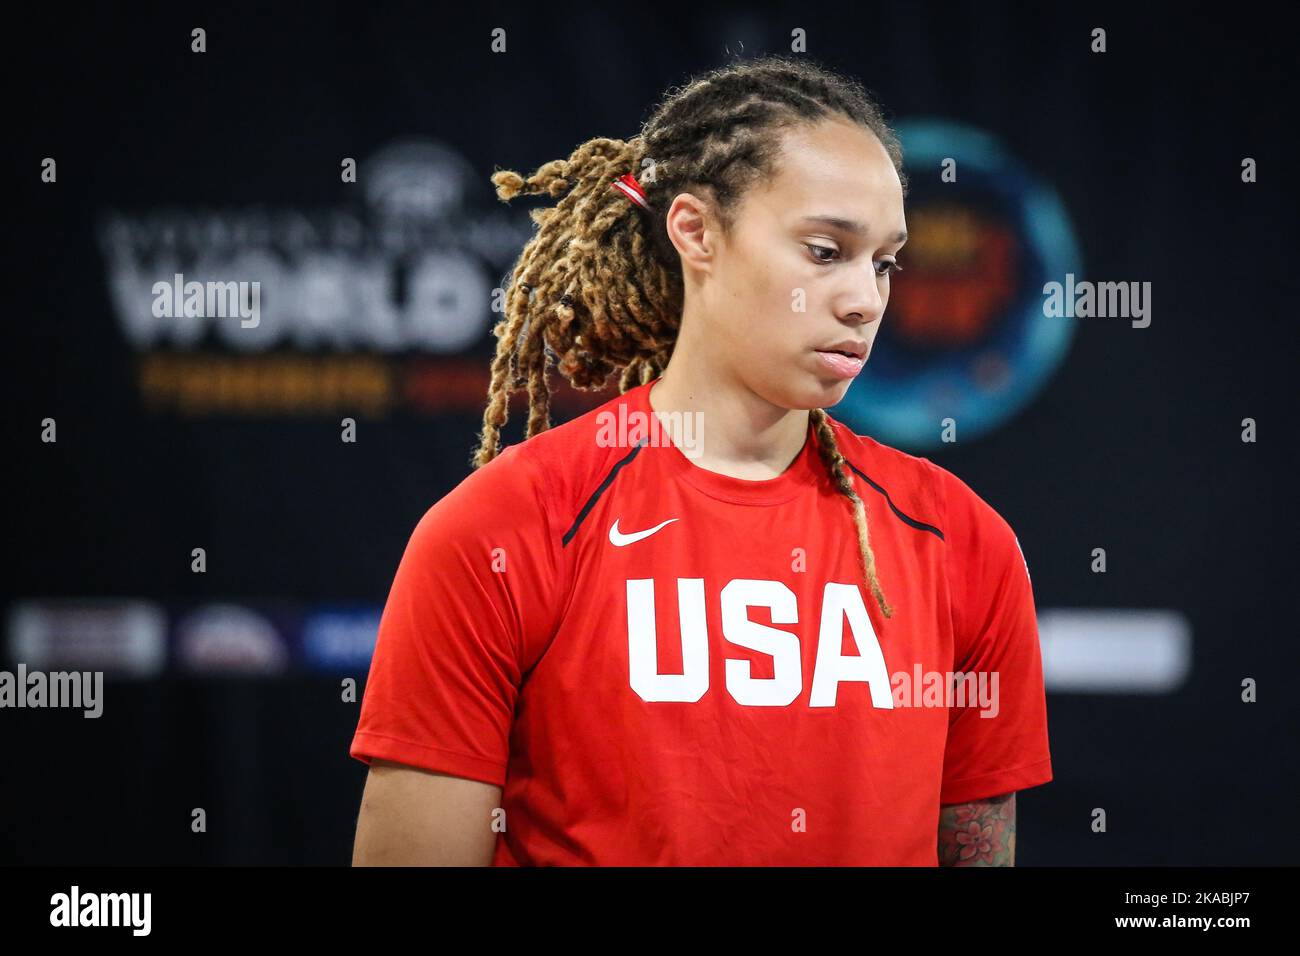 Espagne, Ténérife, 25 septembre 2018: Portrait du joueur de basket-ball américain Brittney Griner lors de la coupe du monde de basket-ball féminin Banque D'Images